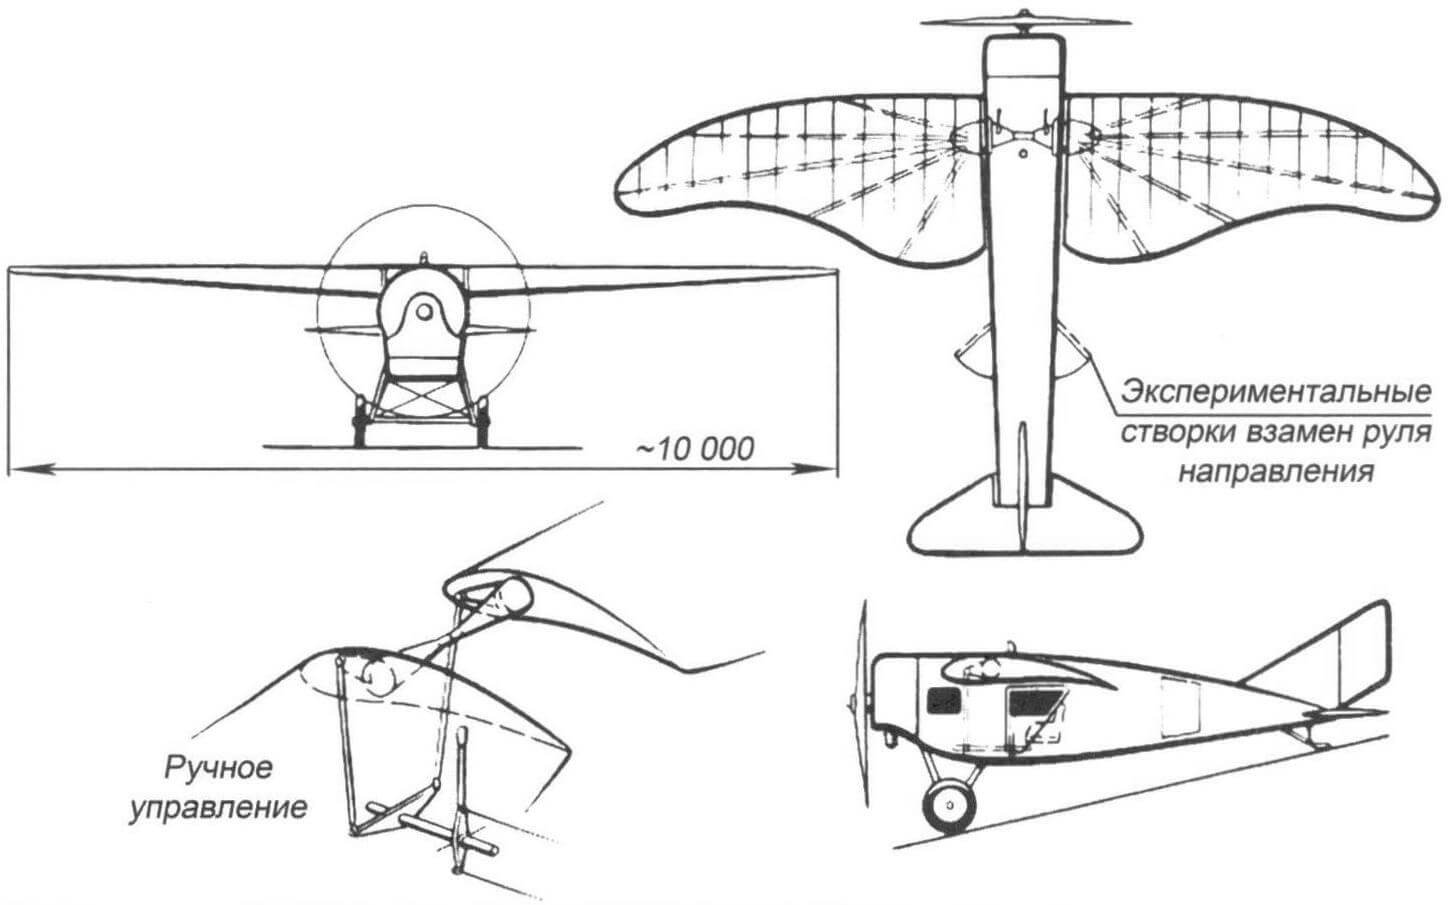 «Орел» - первый самолет Е.Р. Энгельса (по книге В.Б. Шаврова «История конструкций самолетов в СССР до 1938 года»)